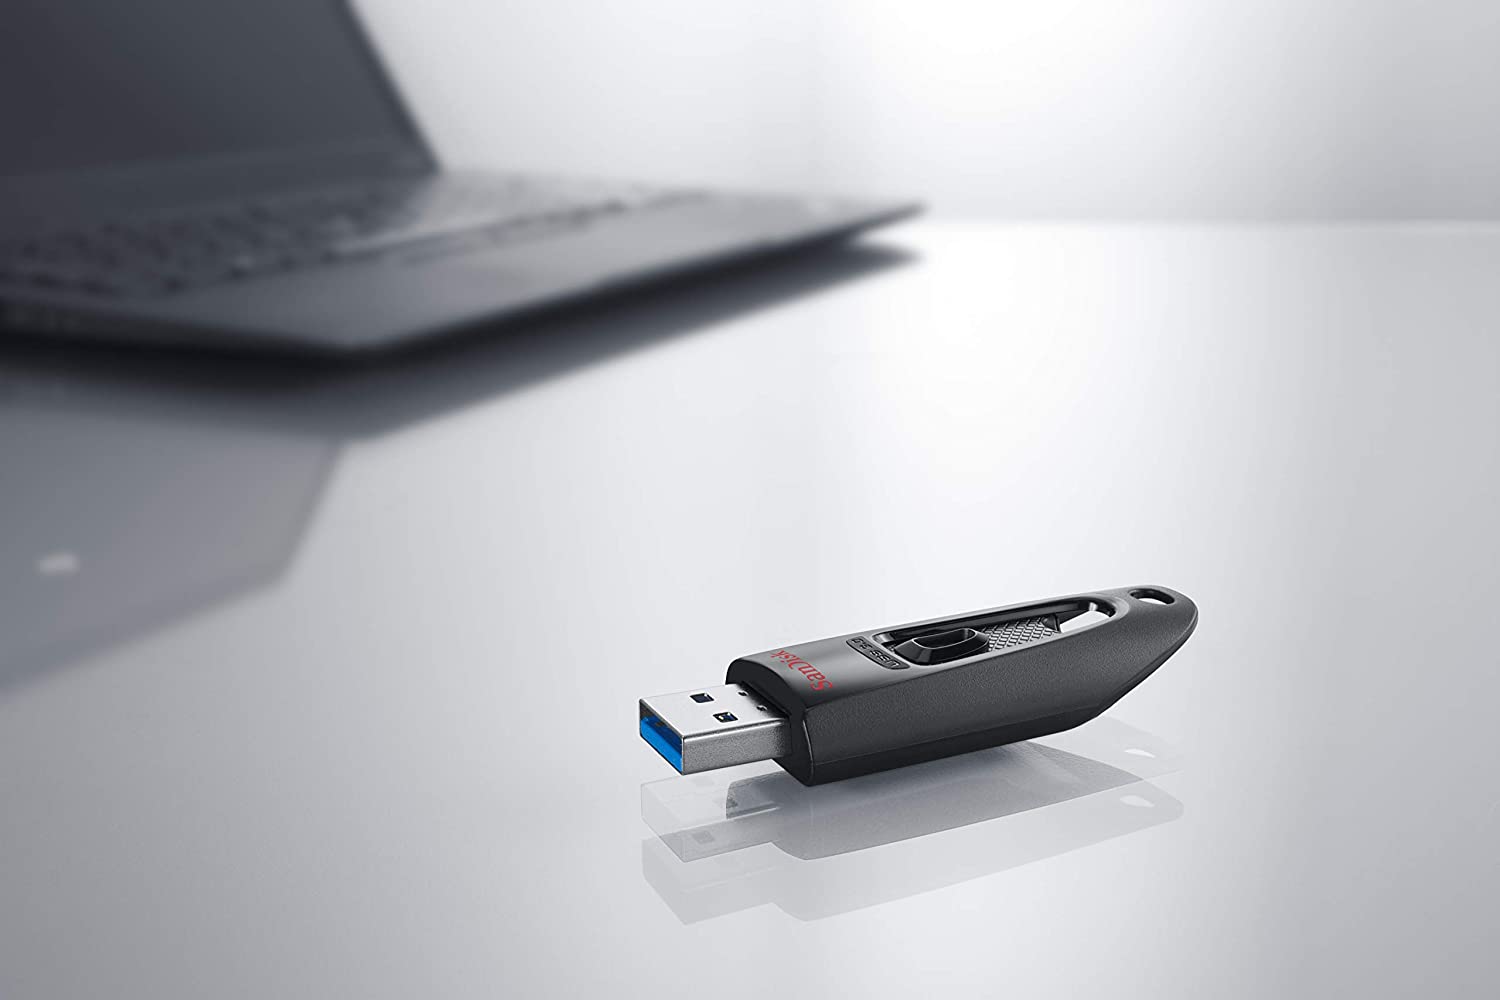 Štýlový USB flashdisk SanDisk Cruzer Ultra s kapacitou 256 GB ponúka jednoduchý a bezpečný spôsob zdieľania, presunu a zálohovania vašich najdôležitejších súborov.